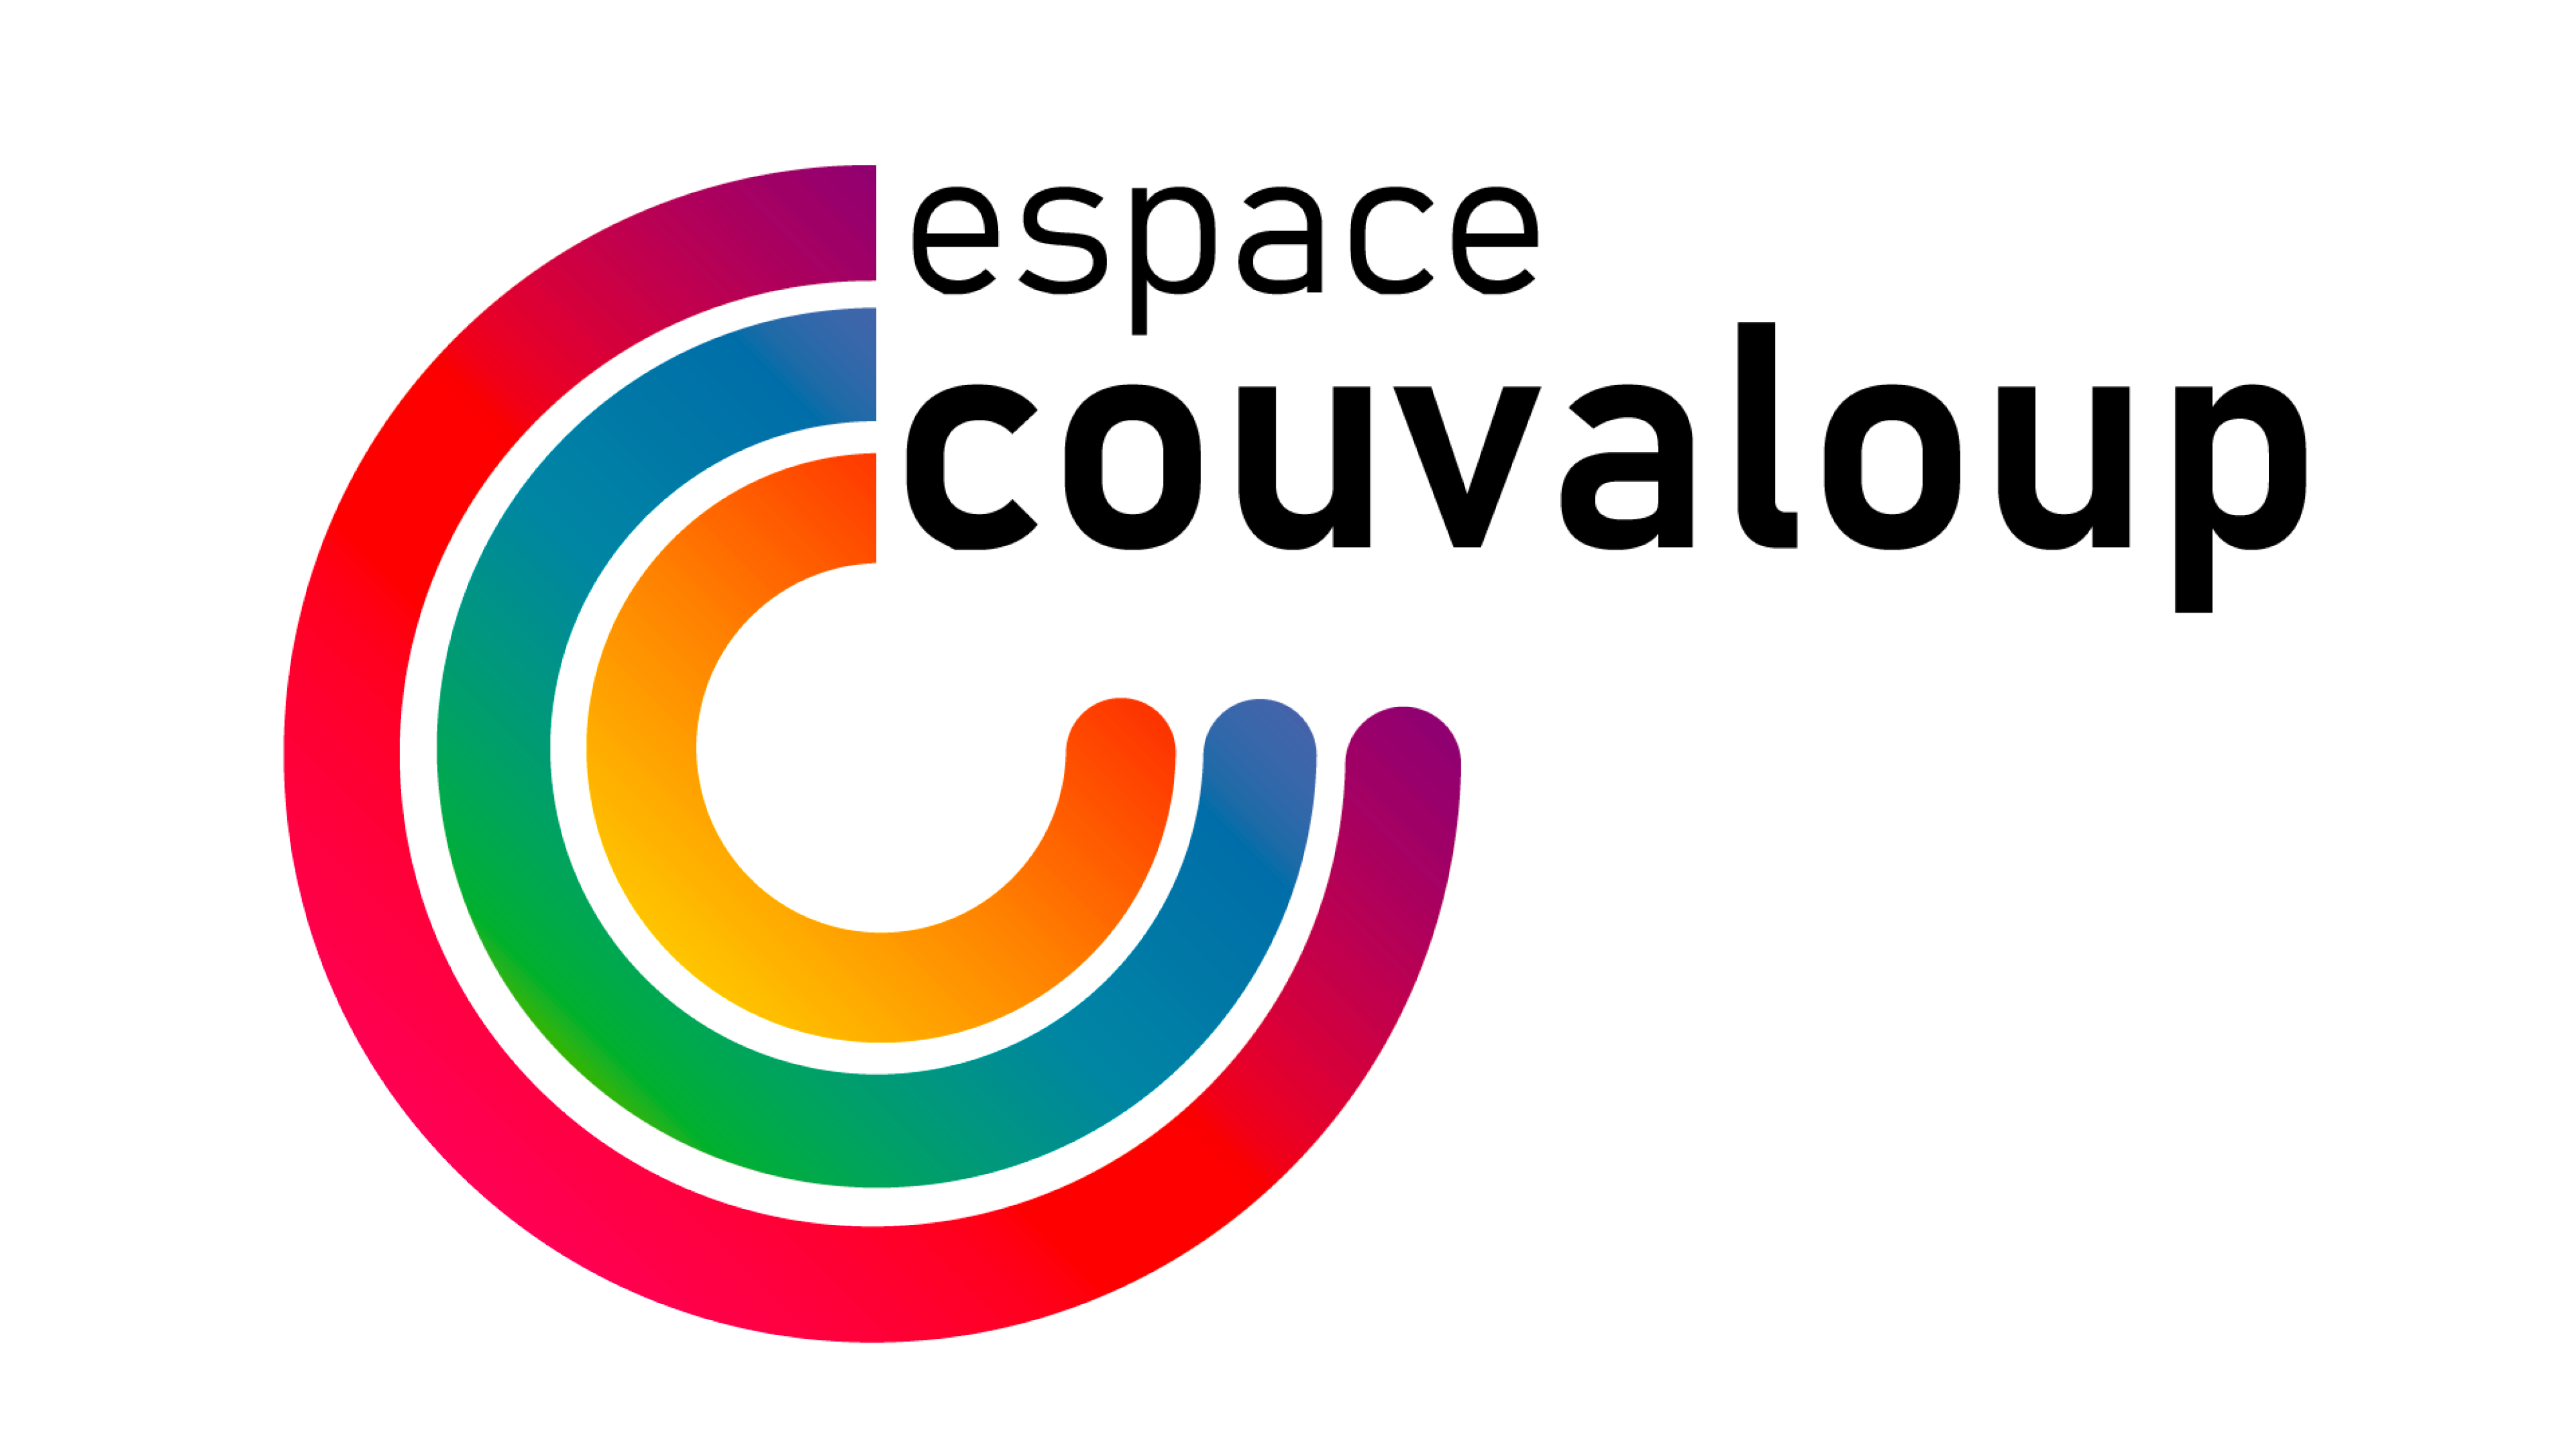 Espace Couvaloup poursuit son changement d’identité